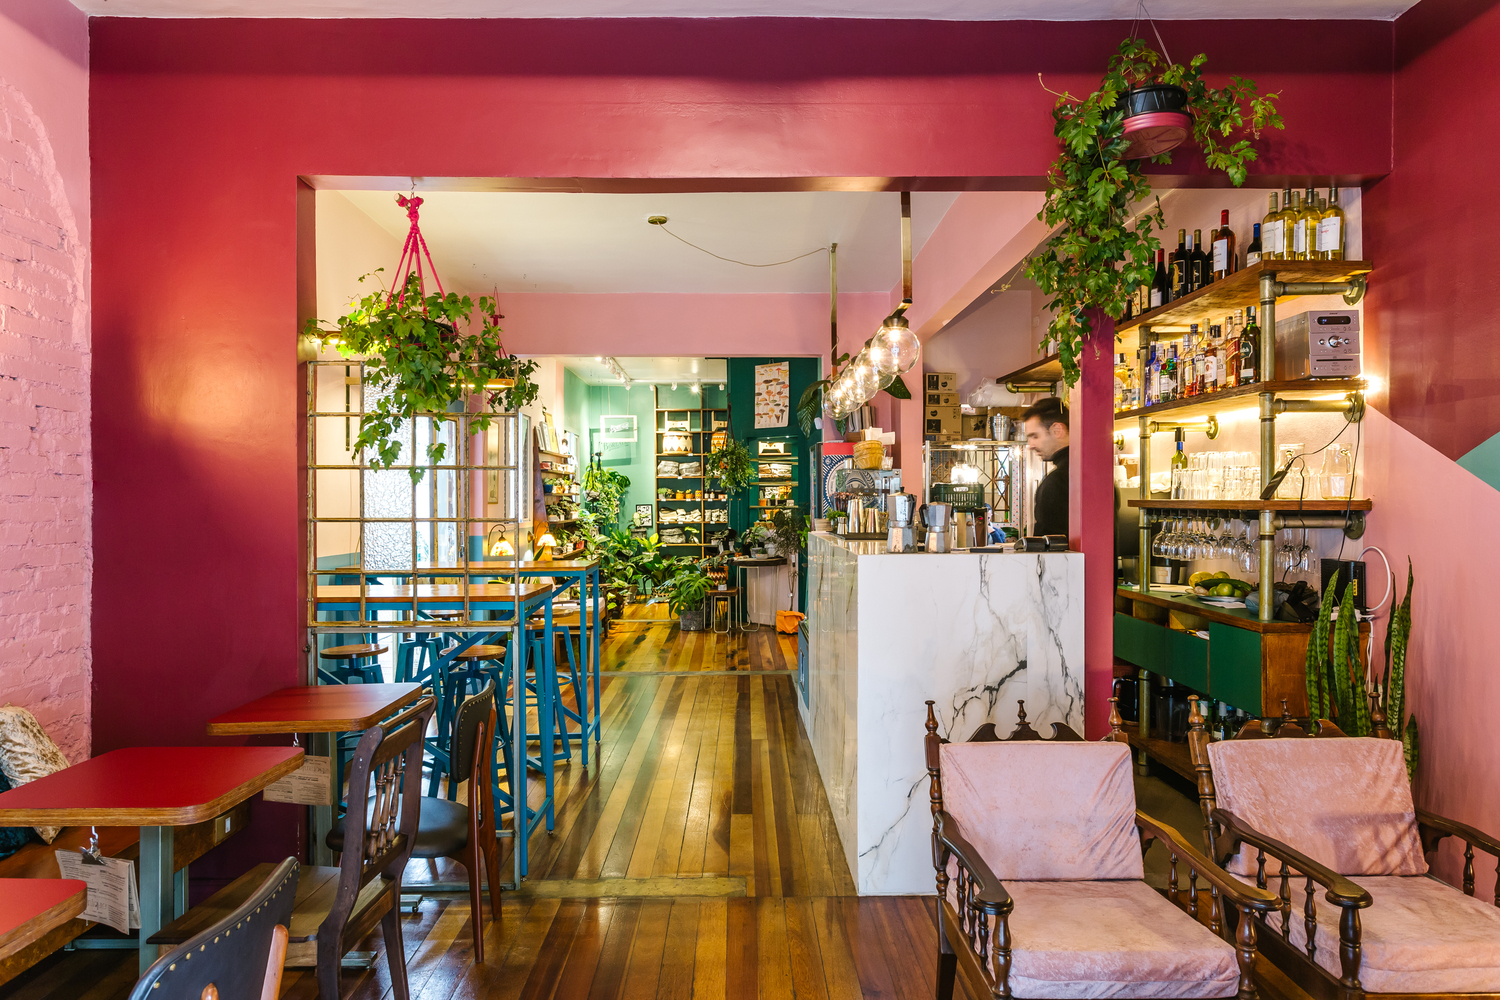 Thiết kế quán cafe theo phong cách Nhiệt đới được lấy cảm hứng từ thiên nhiên